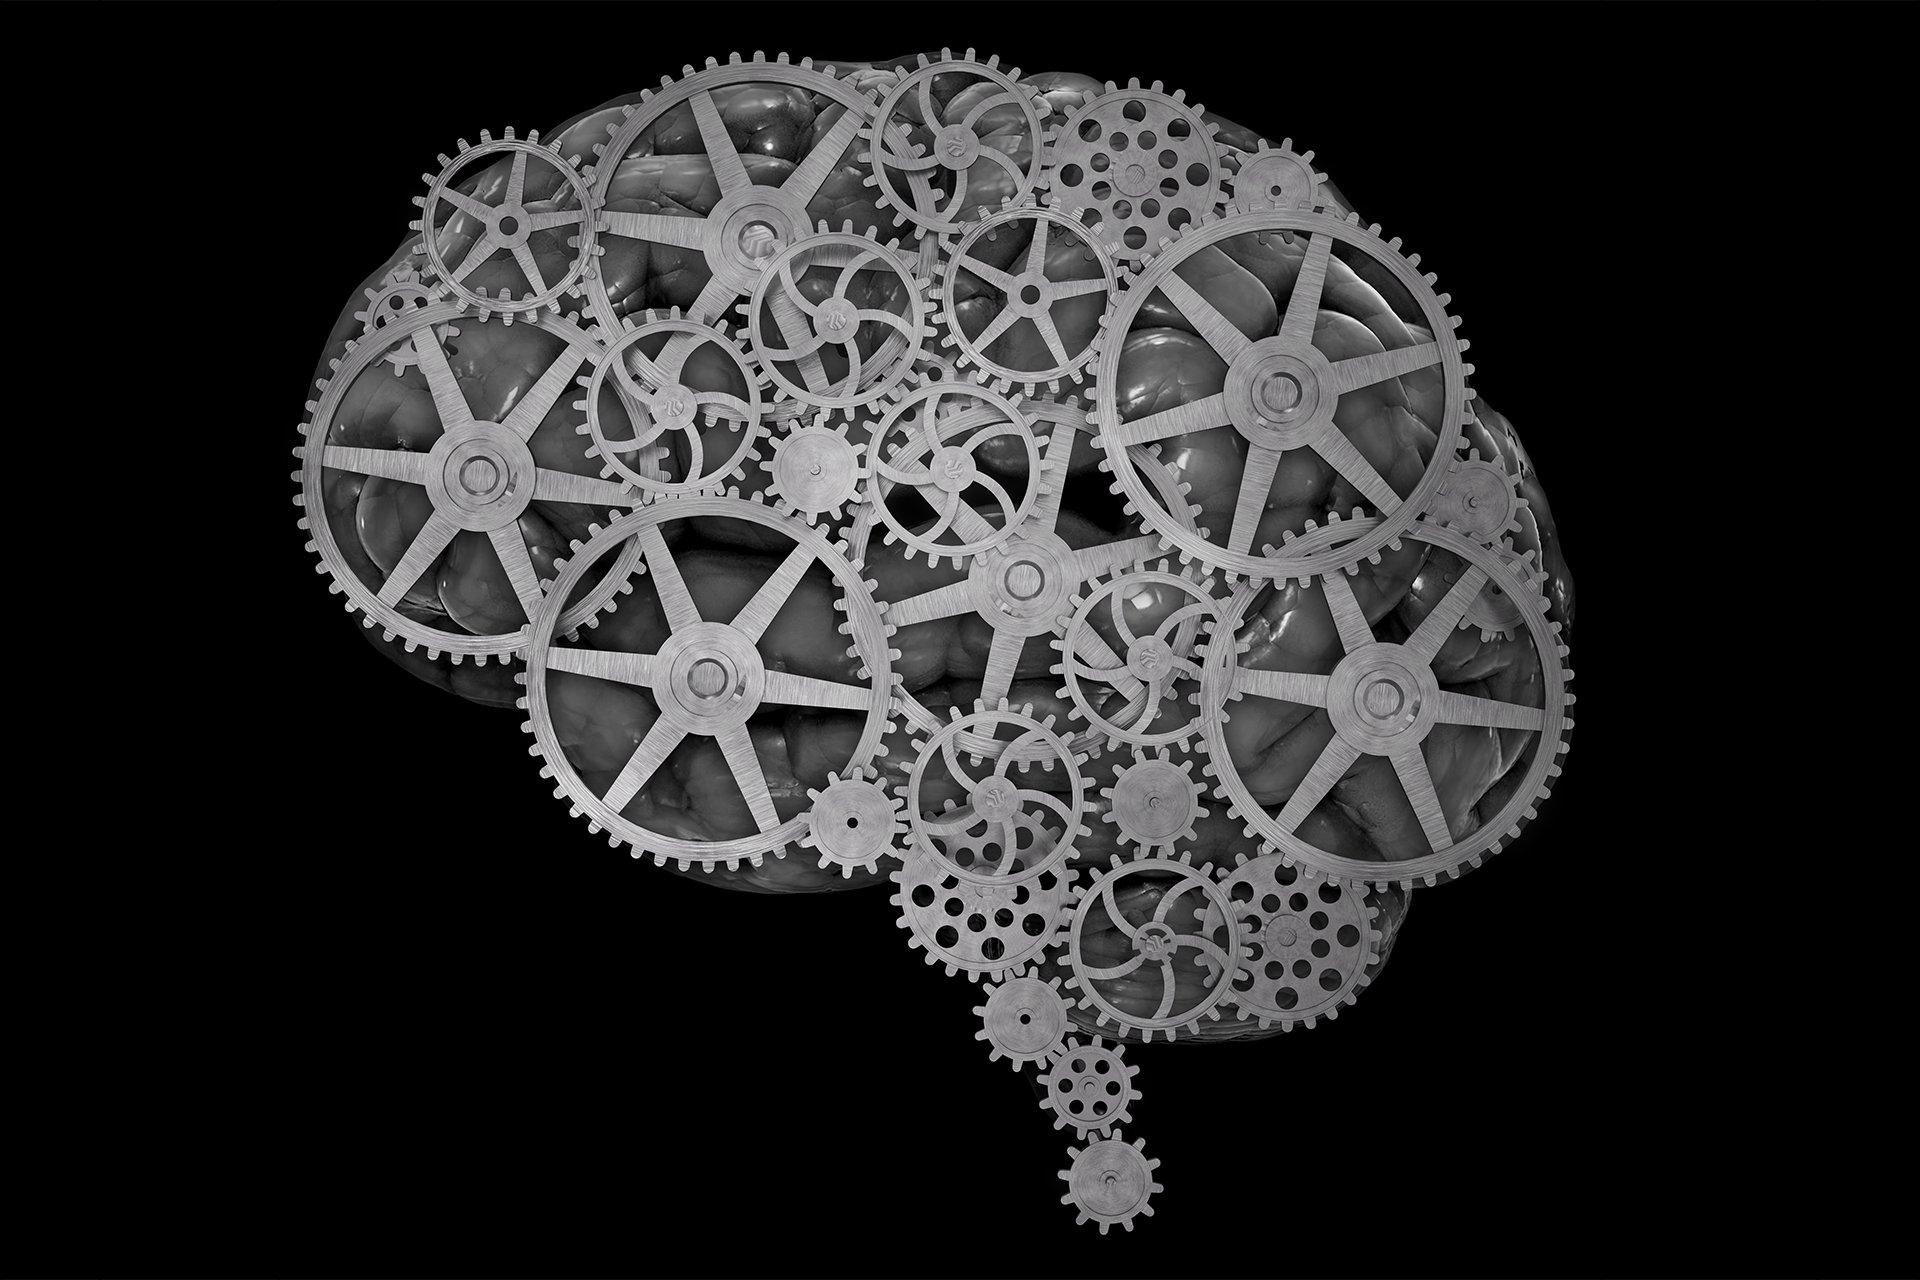 Brain anatomy medical head skull gear gears psychedelic wallpaper